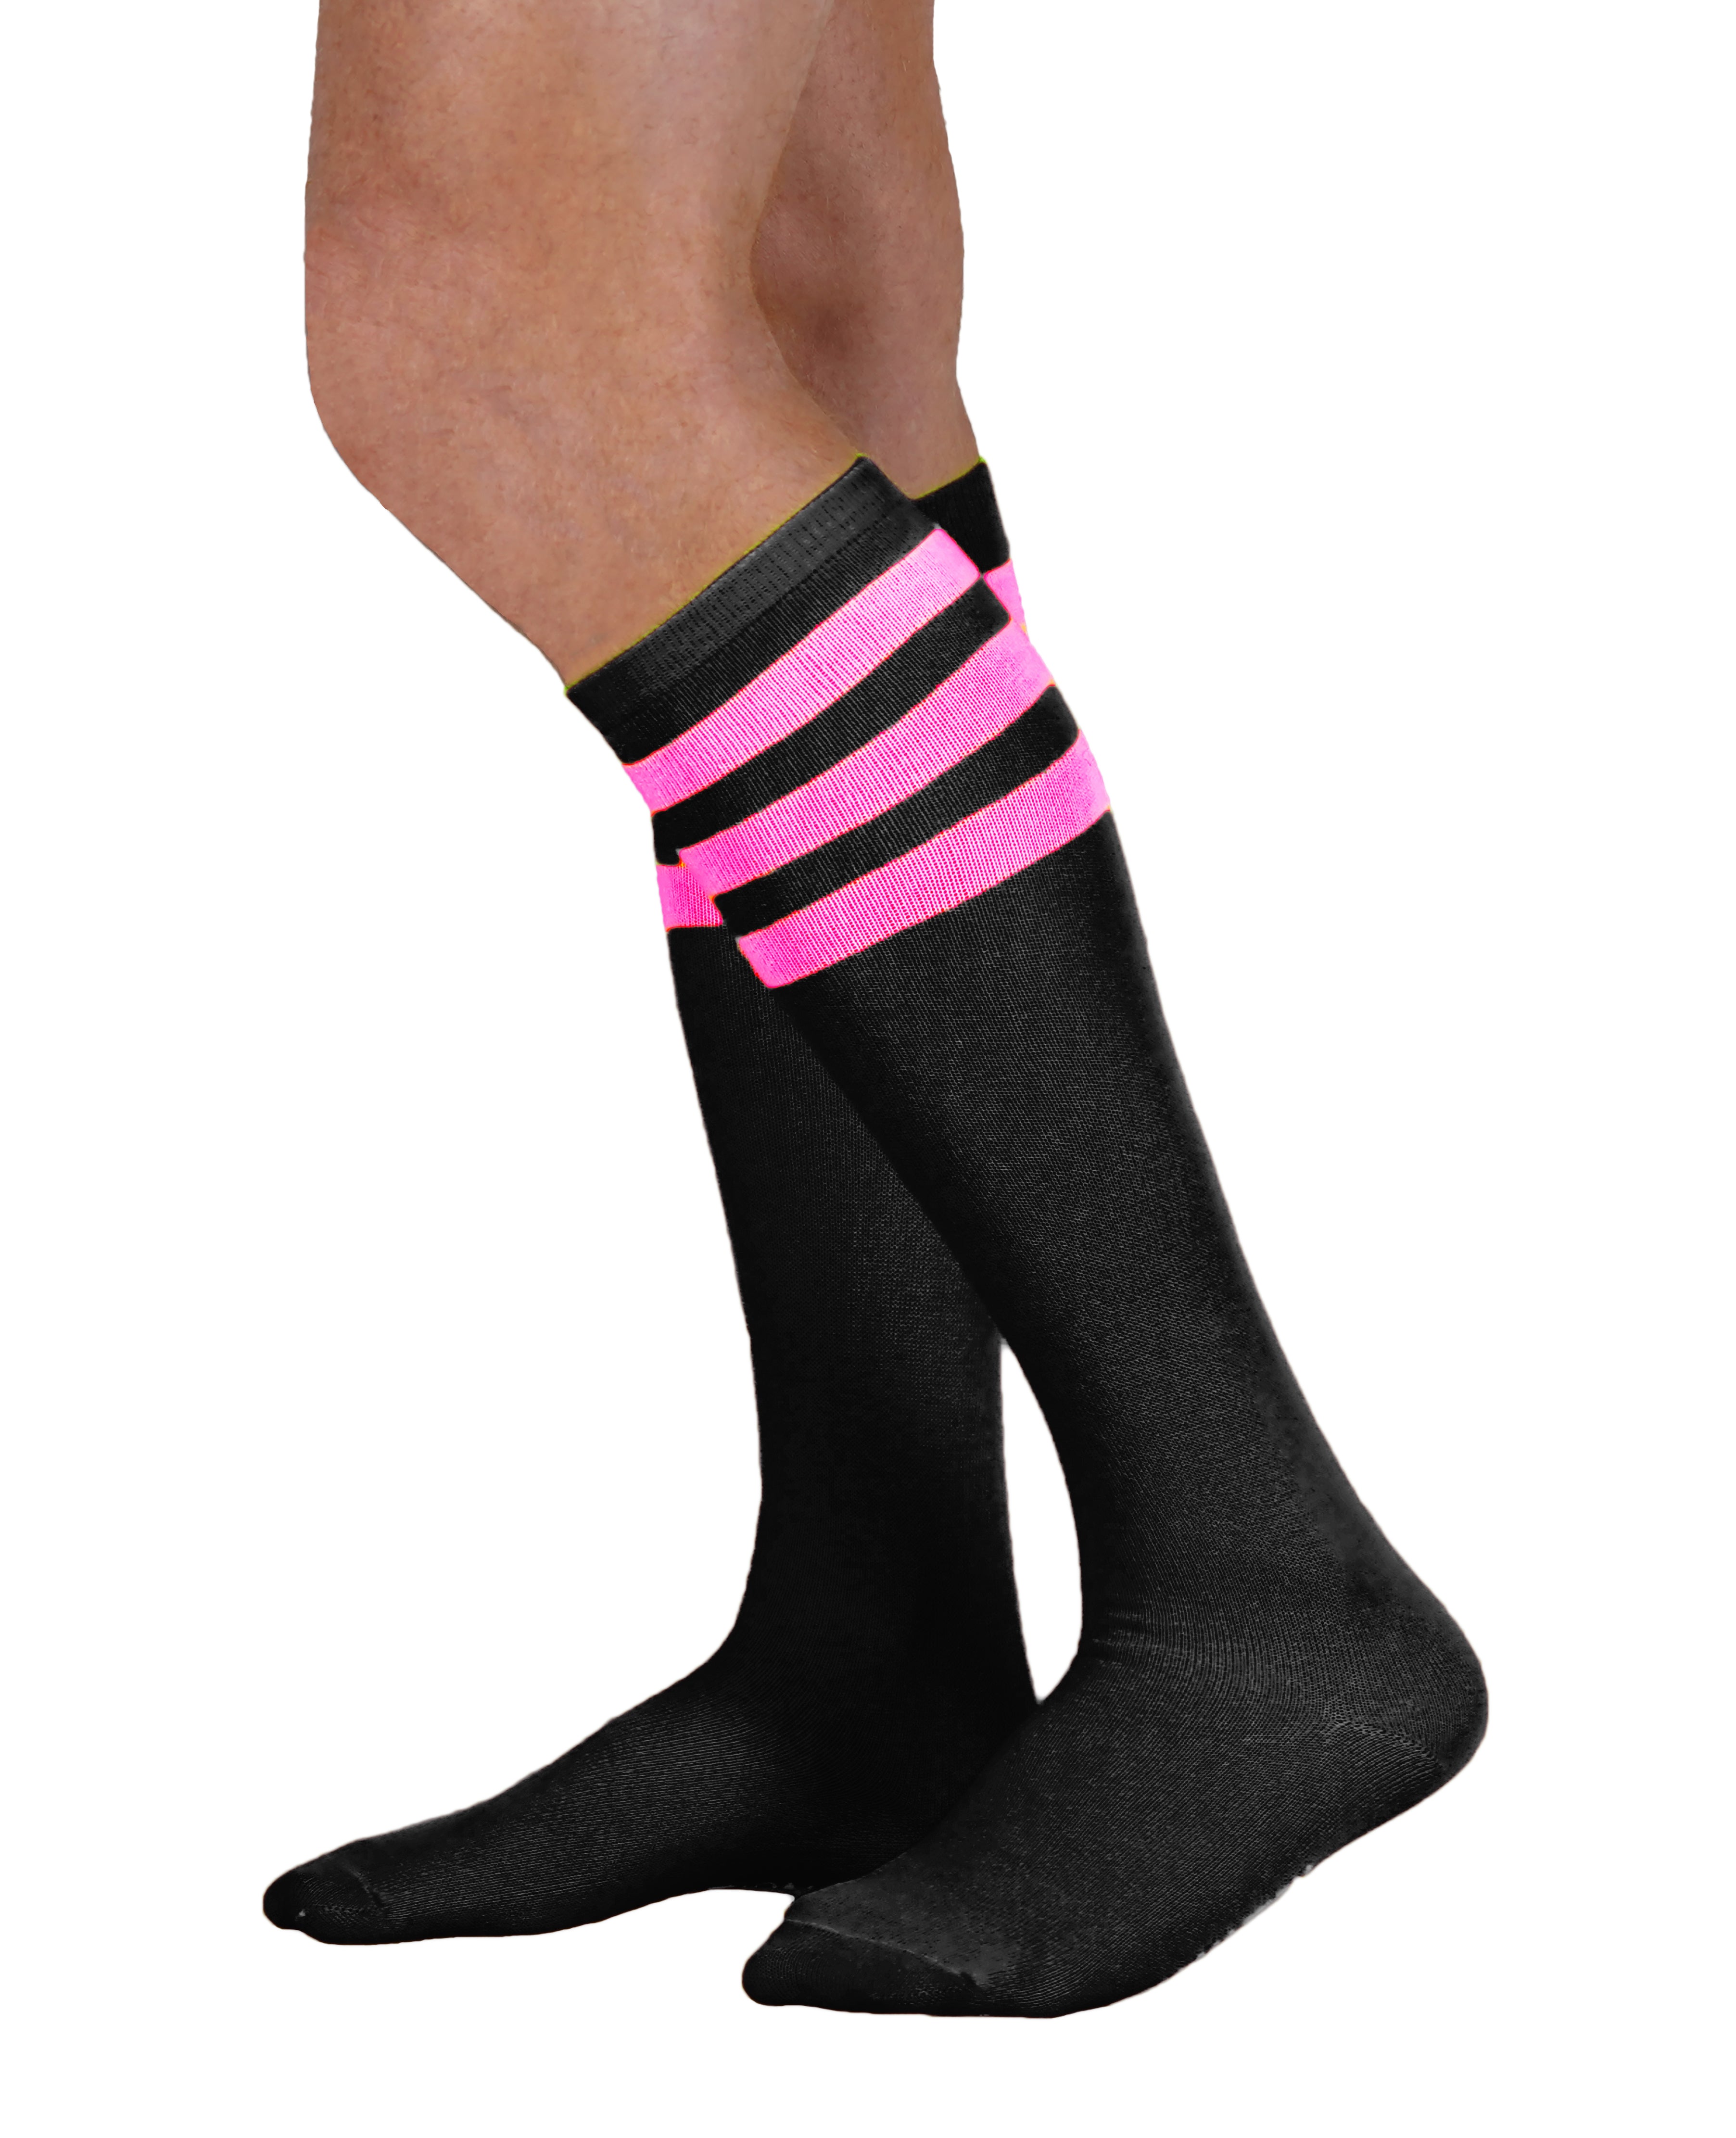 Unisex Black Knee High Tube Socks with Neon Stripes (4 Pack)